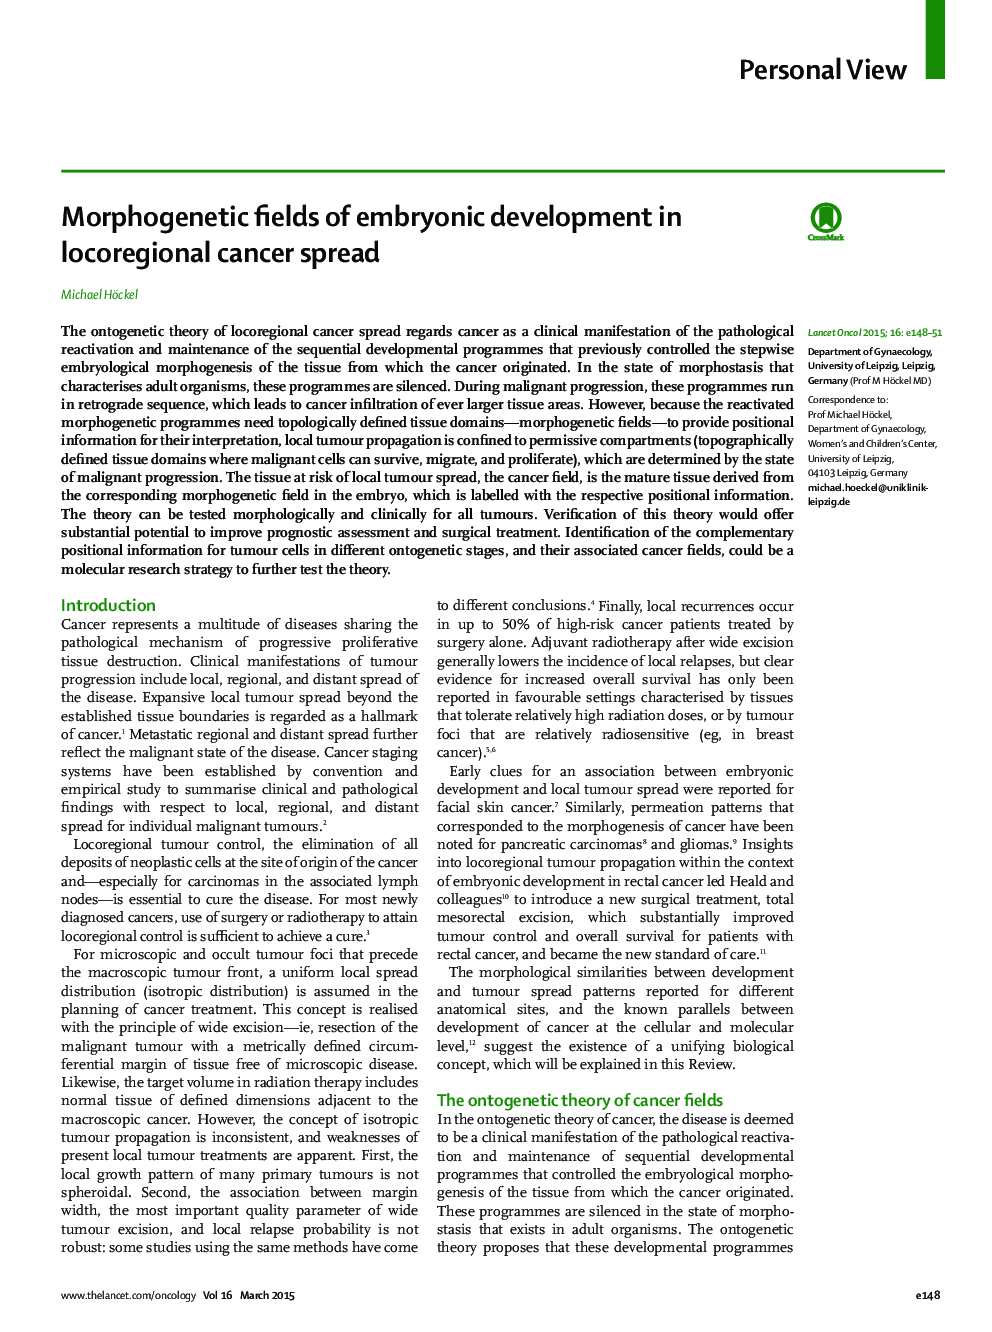 Morphogenetic fields of embryonic development in locoregional cancer spread